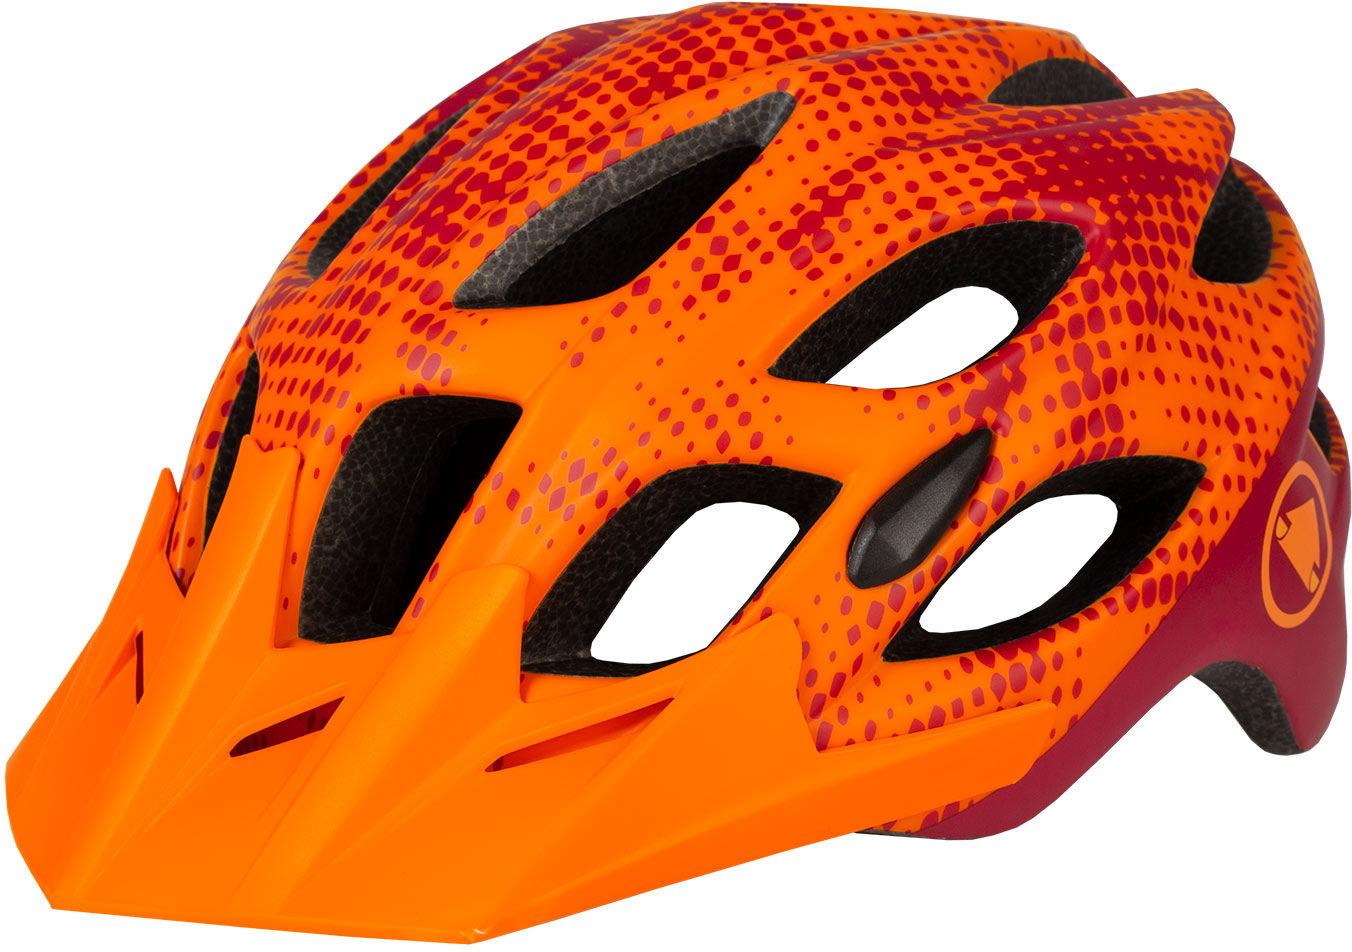 Endura Hummvee Youth Helmet - Tangerine